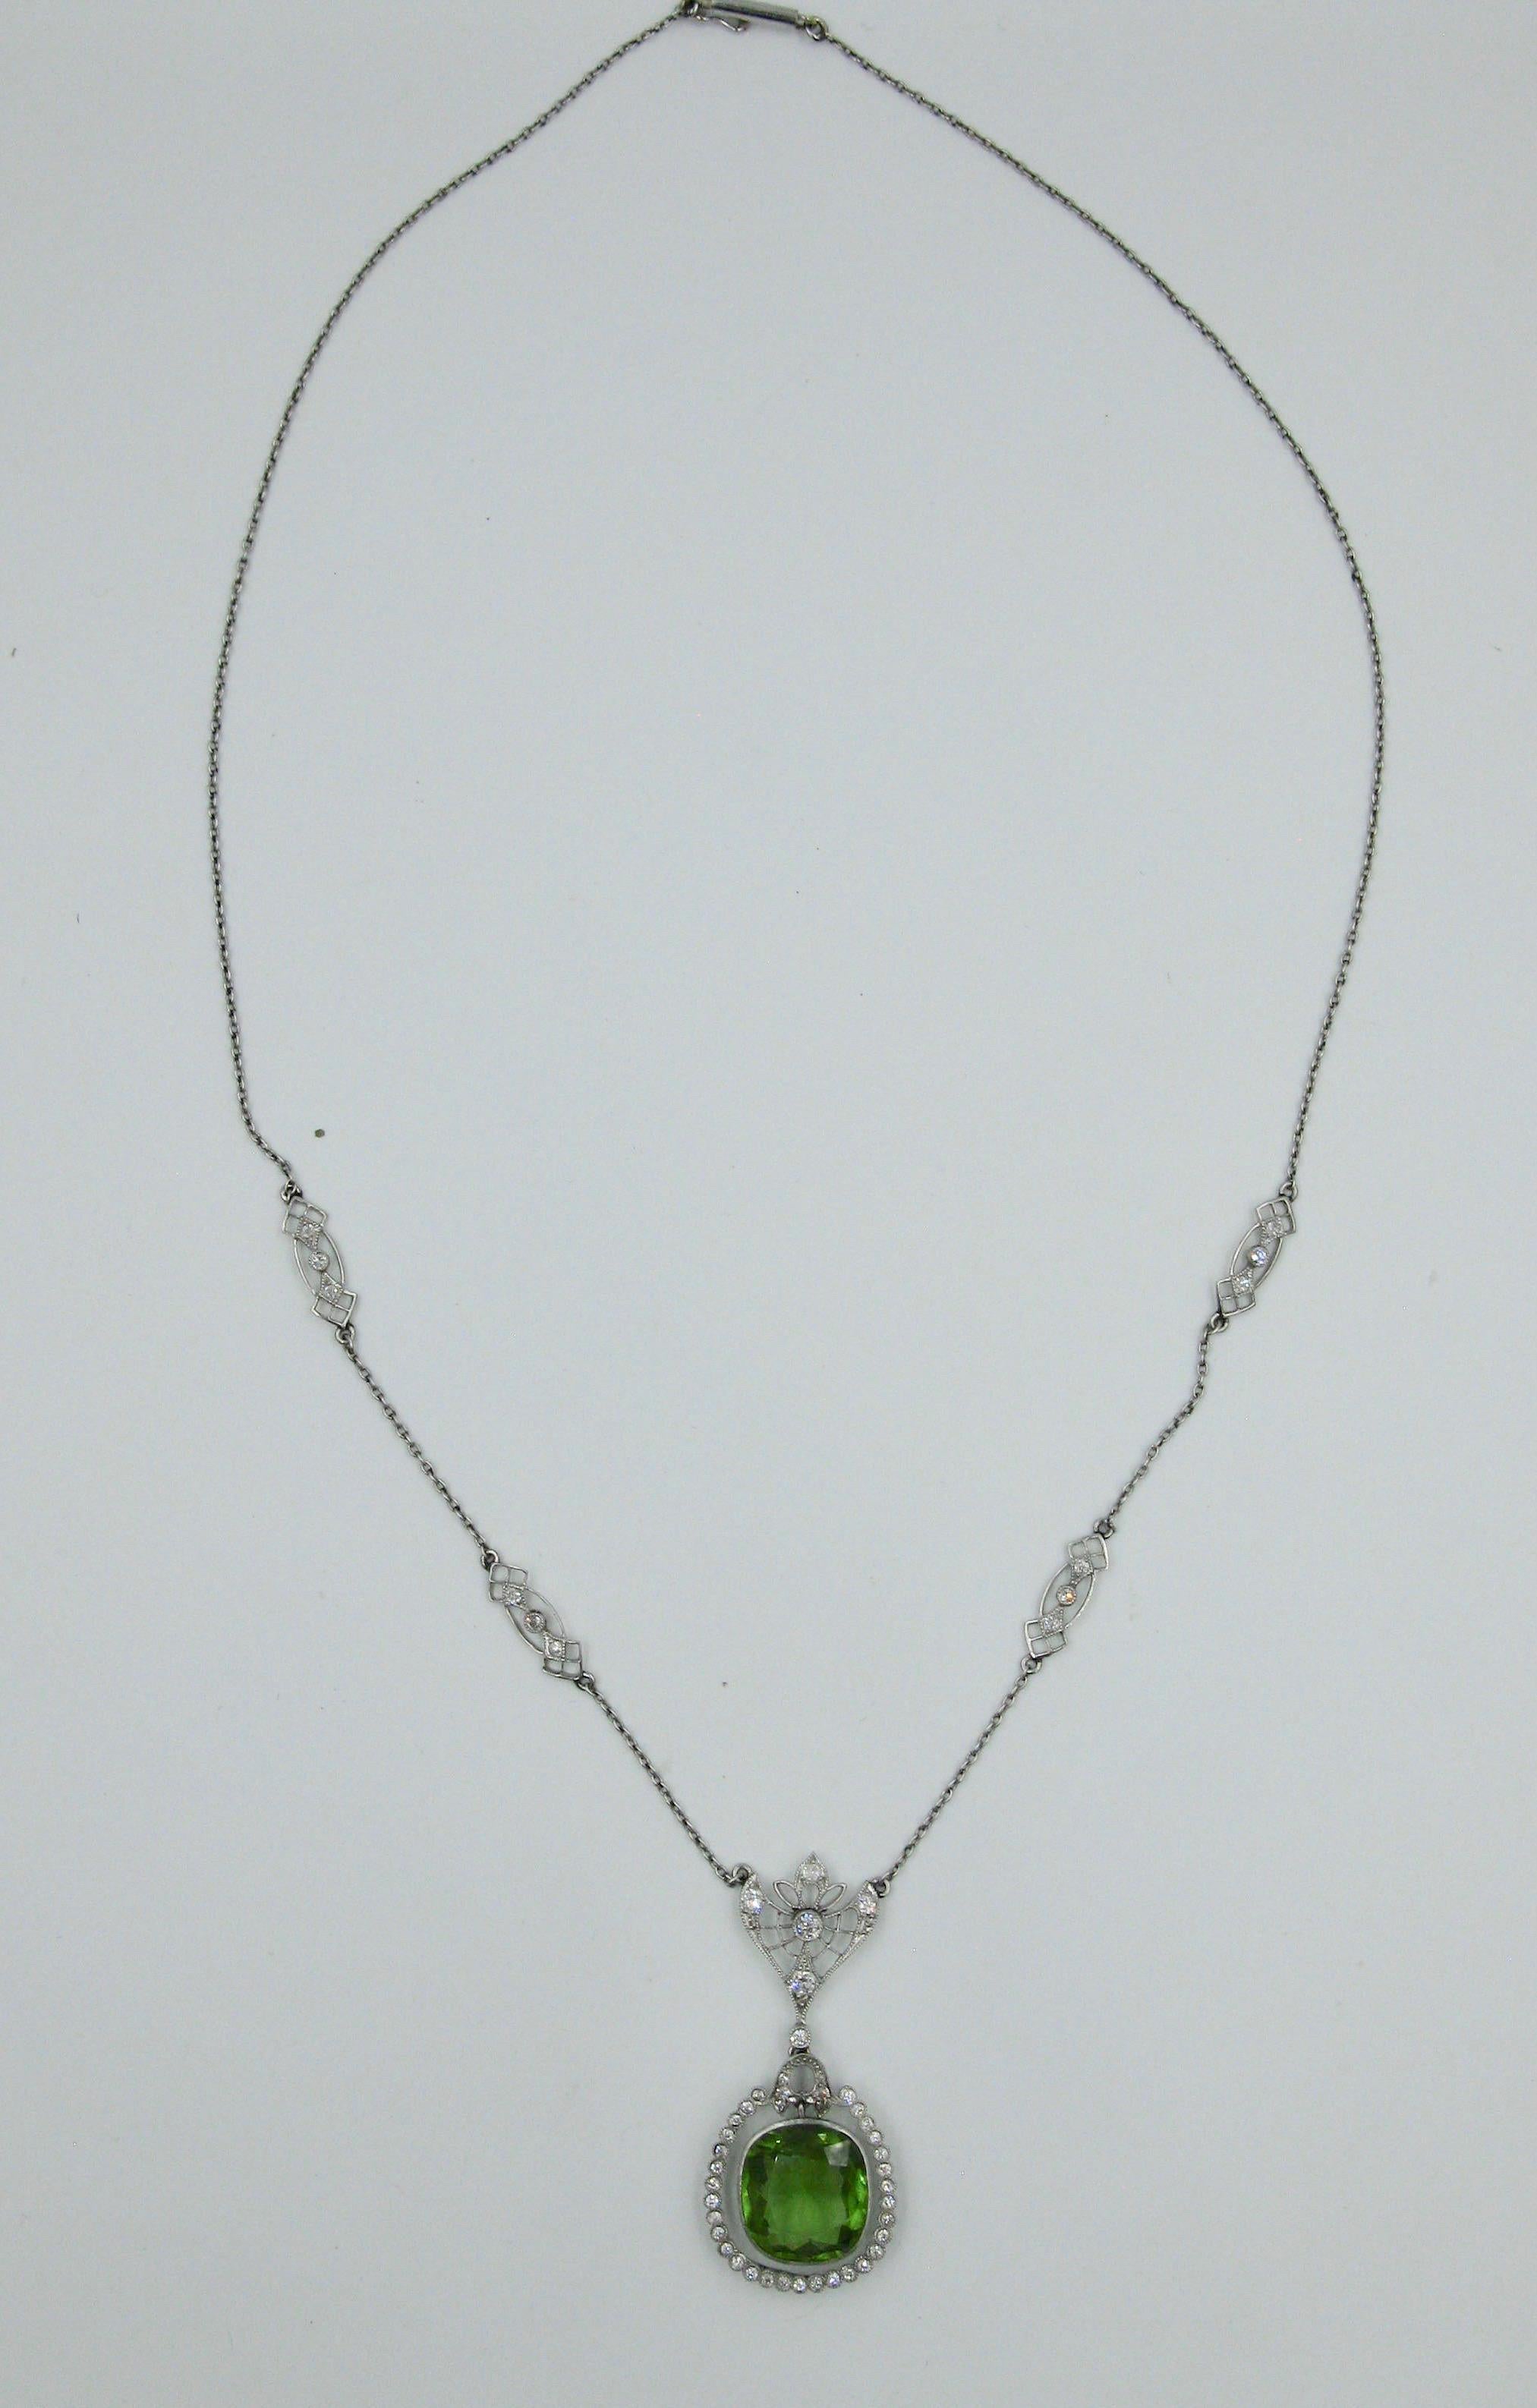 Dies ist eine atemberaubende antike viktorianischen - Edwardian Peridot Platin Diamant Lavaliere Anhänger Halskette.  Der prächtige Peridot ist ein kissenförmiger Peridot von 7,25 Karat.  Die Farbe dieses Edelsteins ist einfach göttlich und er hat